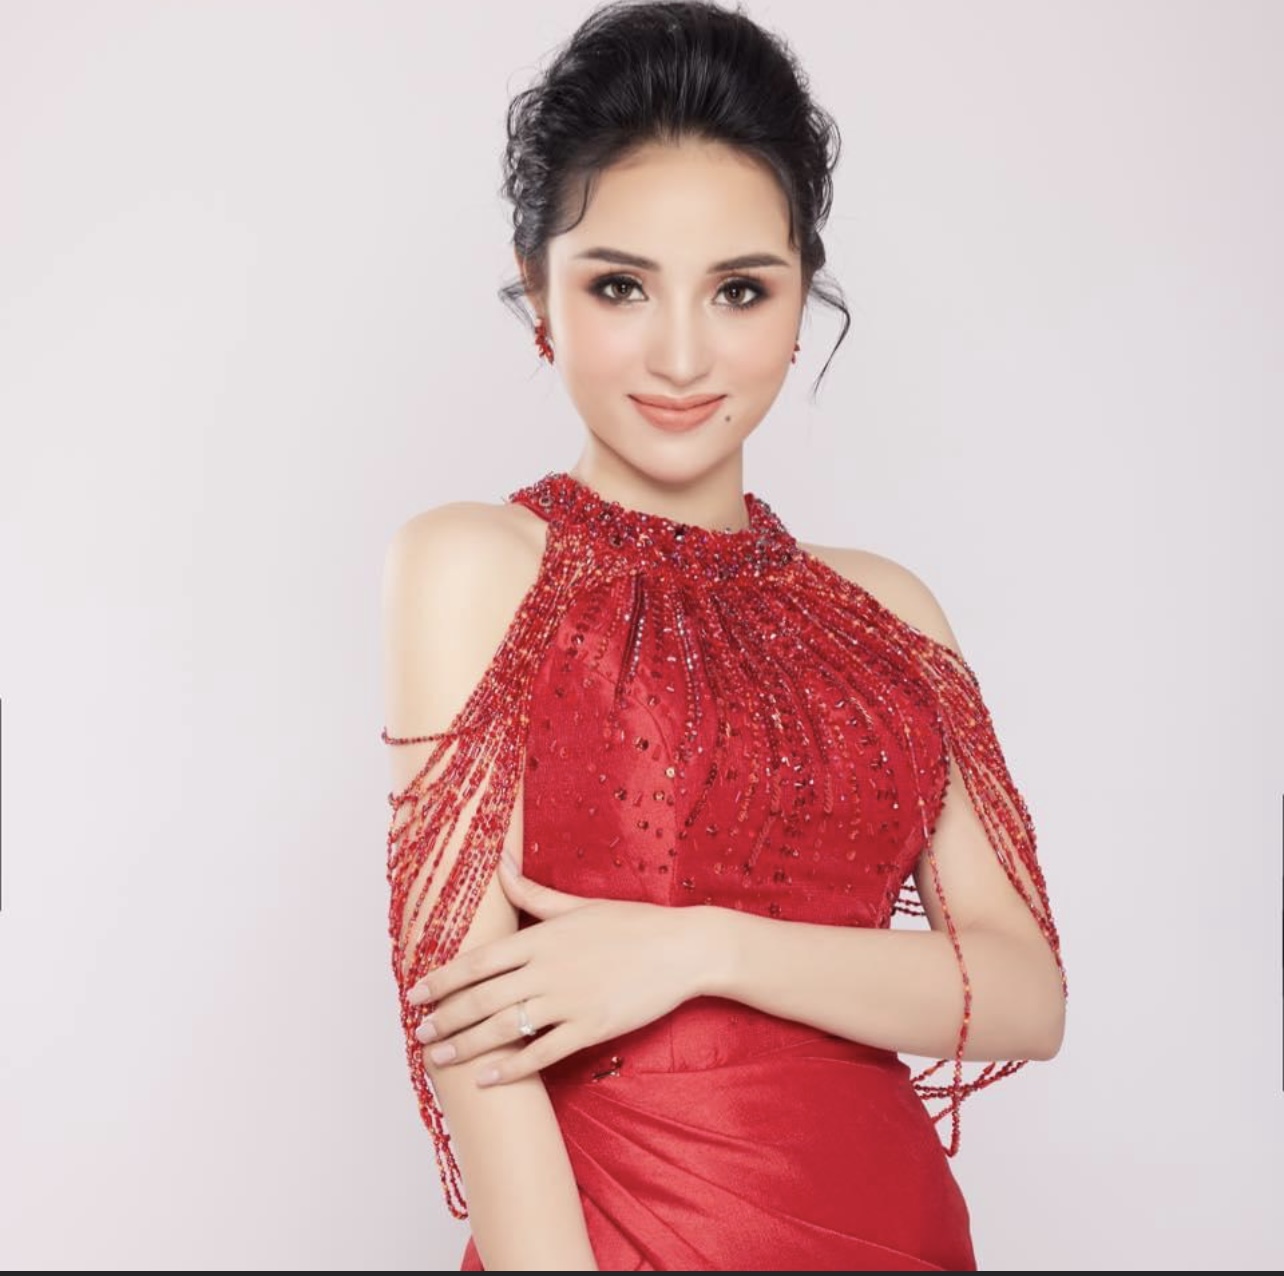 Hoa hậu Doanh nhân Việt Nam 2021 – Cuộc thi sắc đẹp dành cho các nữ doanh nhân đã chính thức trở lại